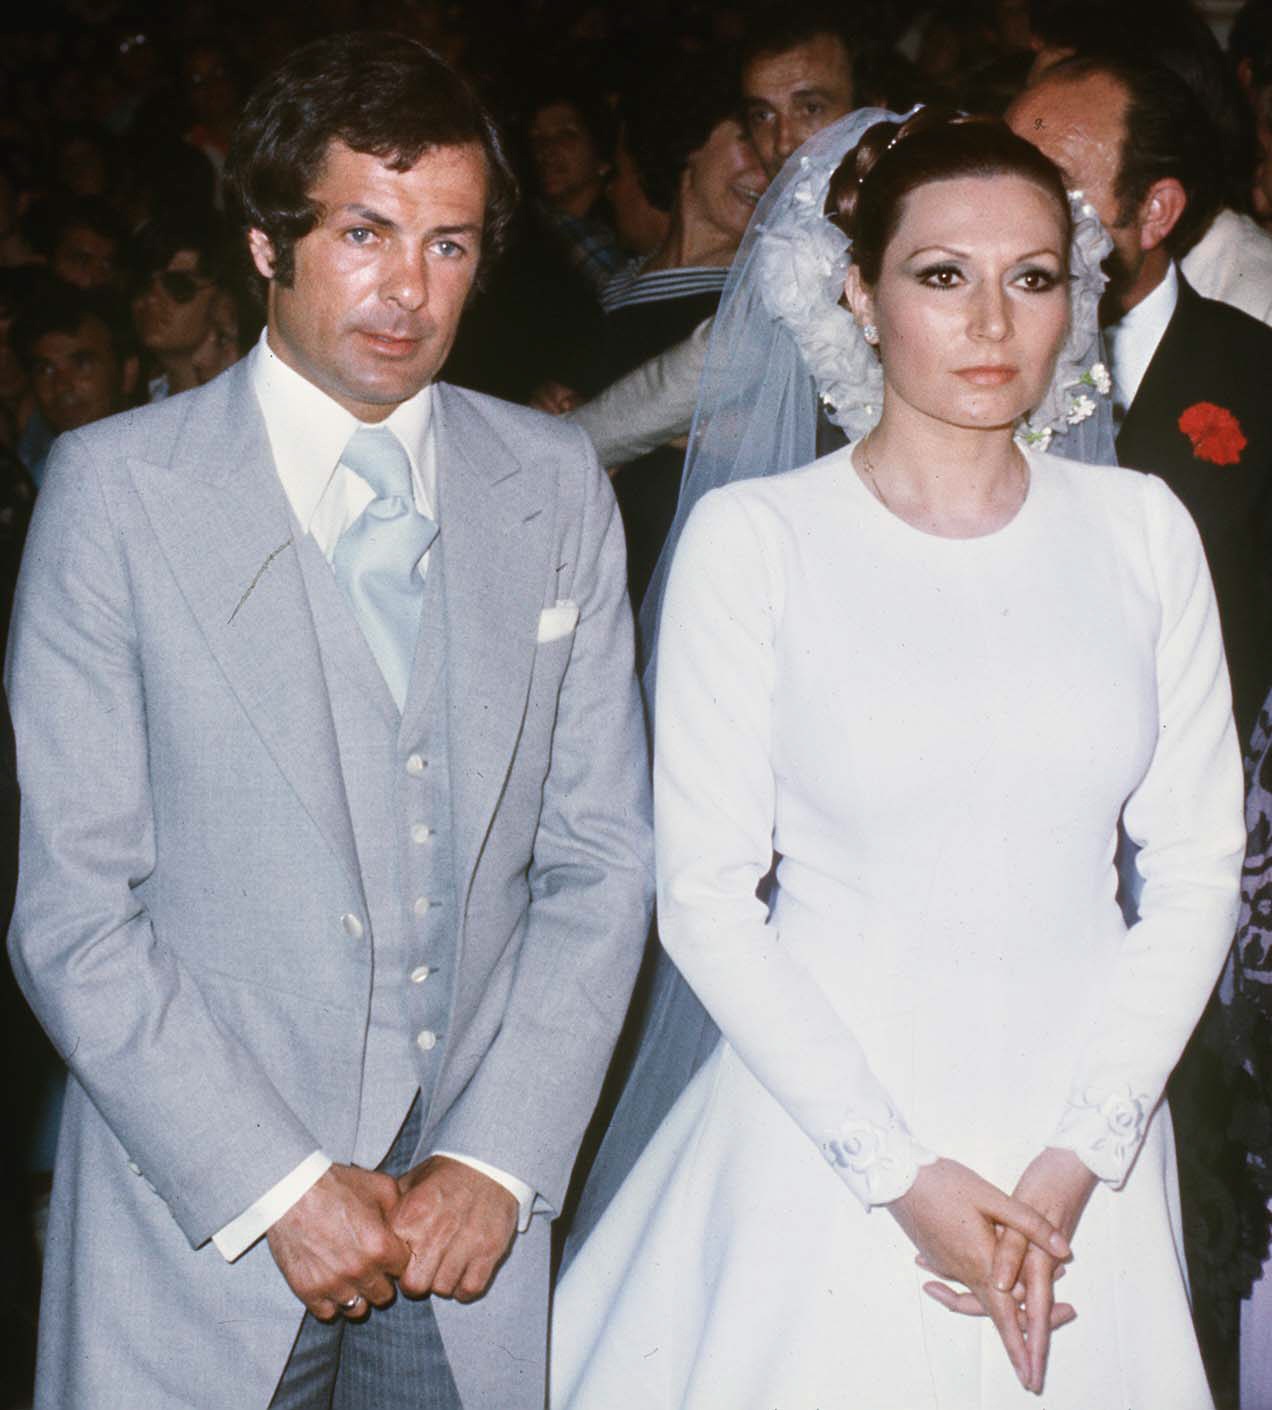 Foto de la boda de Pedro Carrasco y Rocío Jurado el 22 mayo de 1976